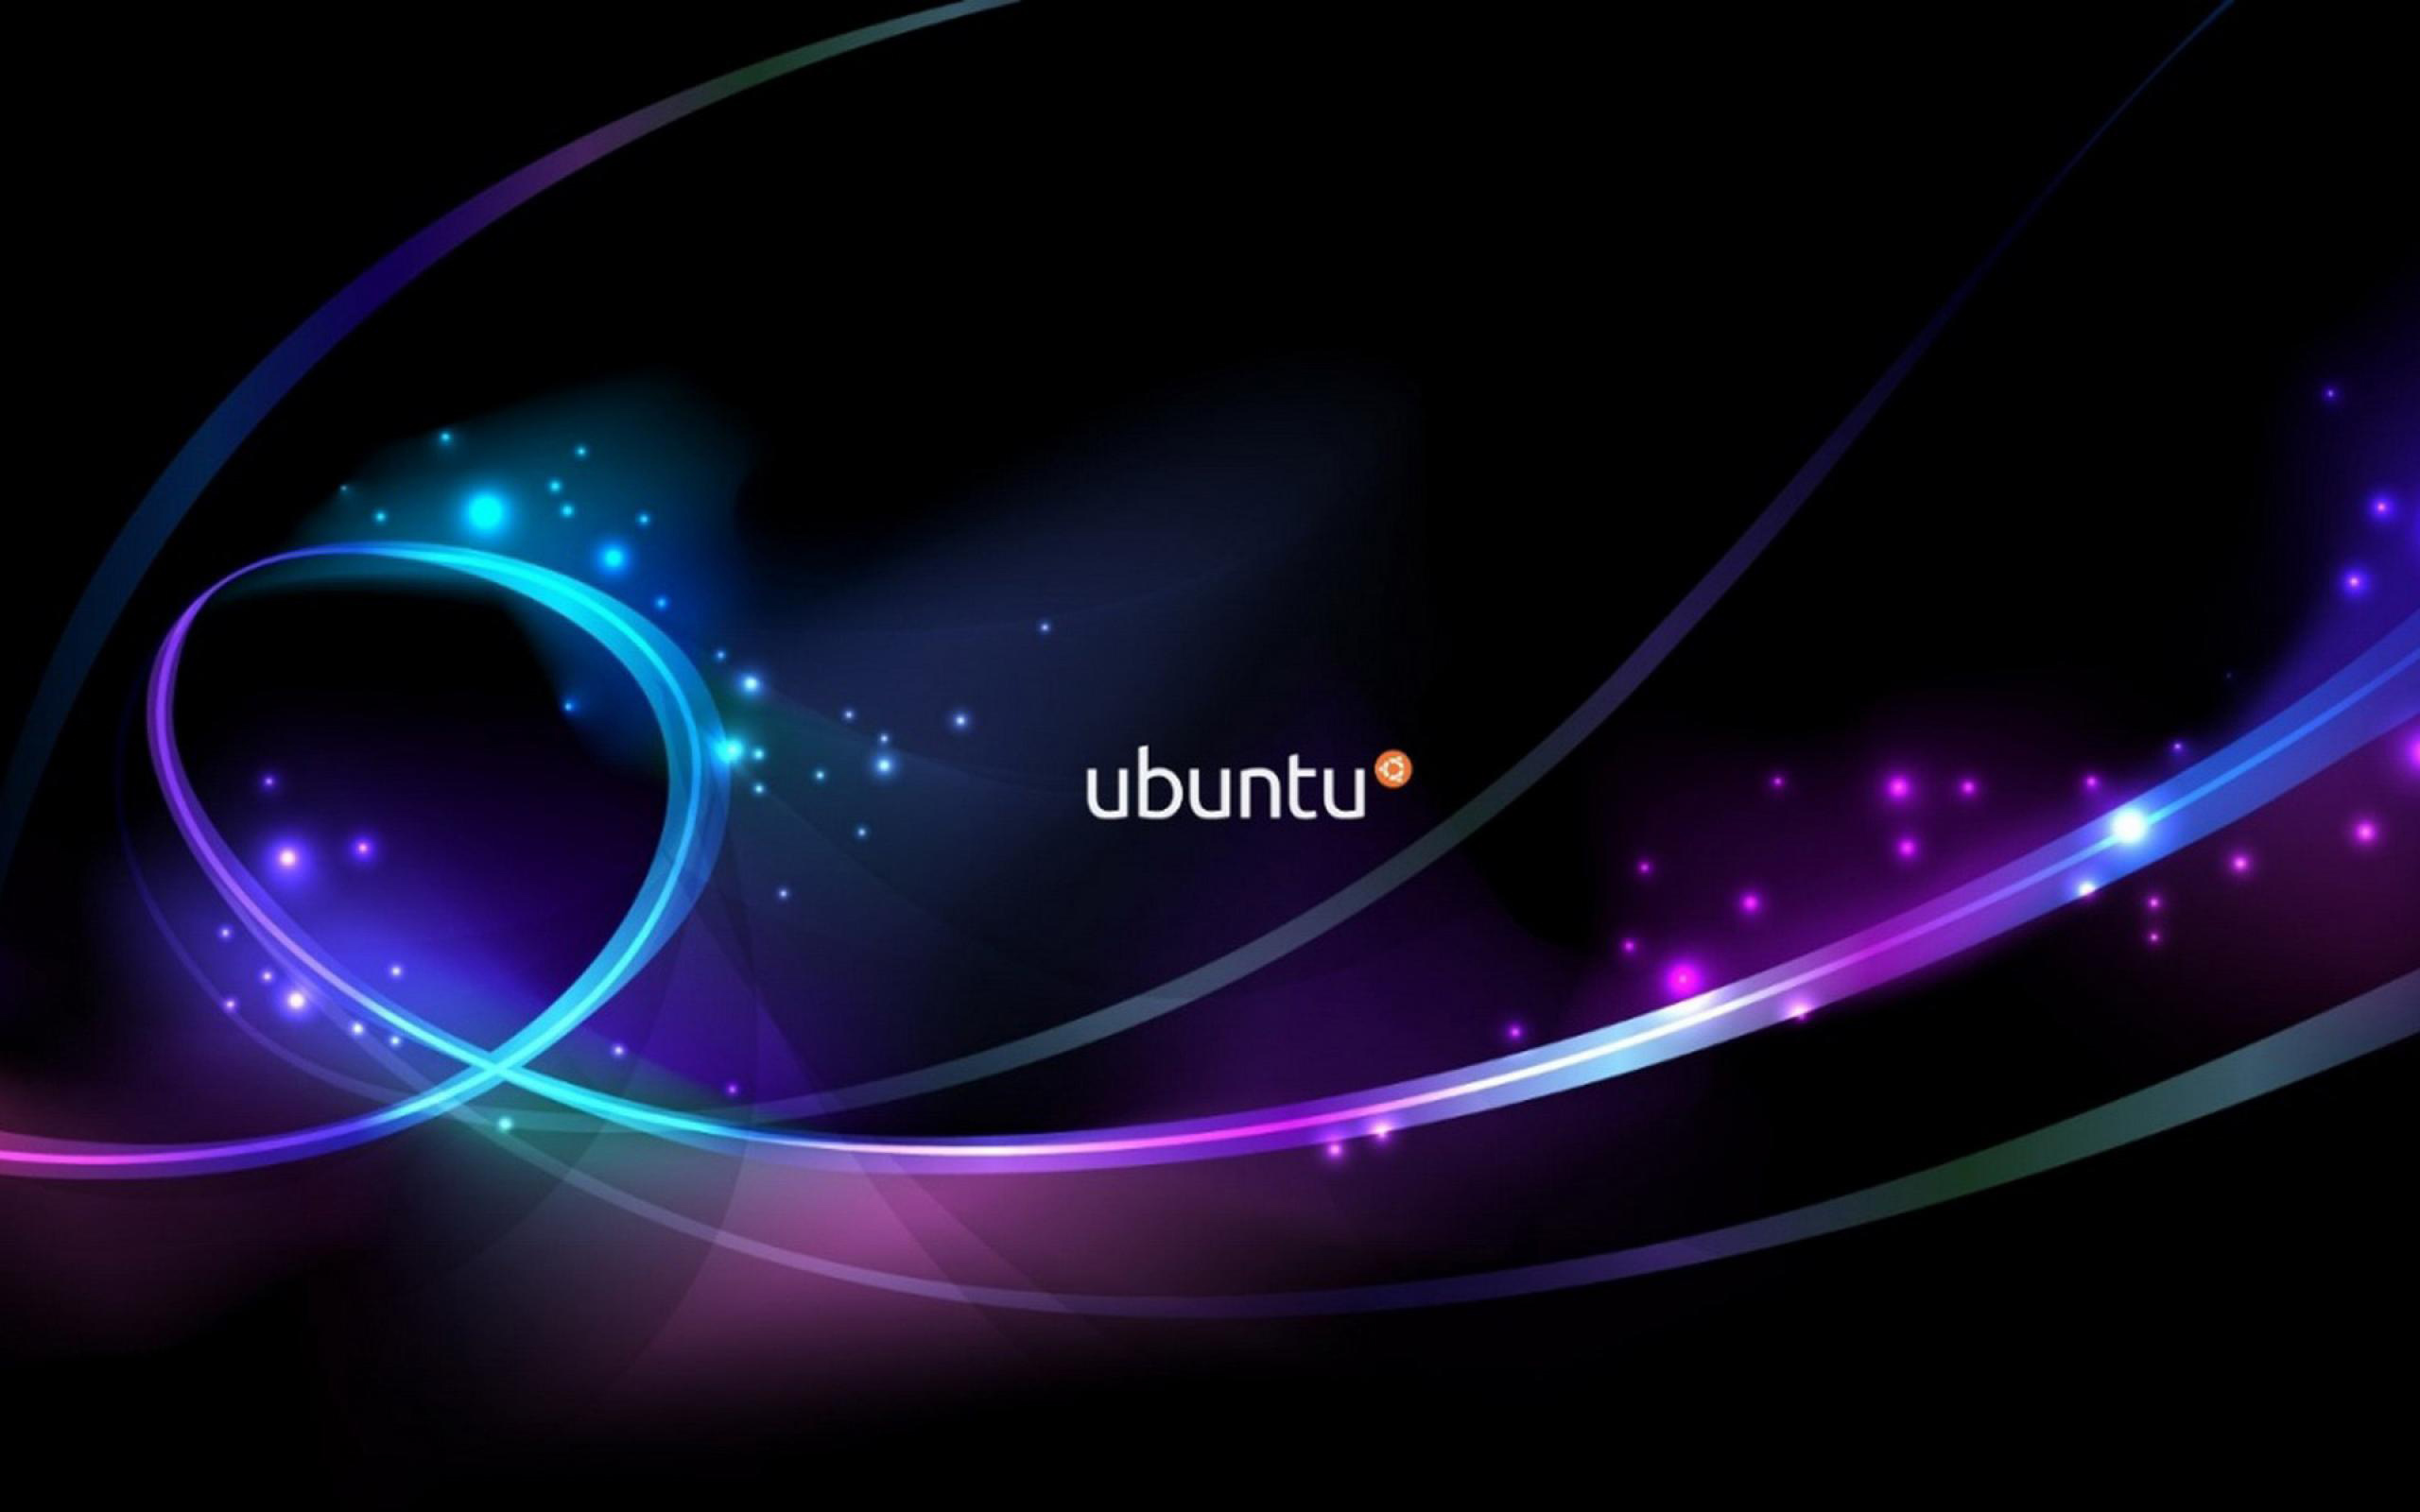 Ubuntu hình nền - Nếu bạn đang tìm kiếm một hình nền đẹp cho máy tính của mình, hãy xem qua bộ sưu tập Ubuntu hình nền của chúng tôi! Chắc chắn bạn sẽ tìm thấy điều mong muốn!